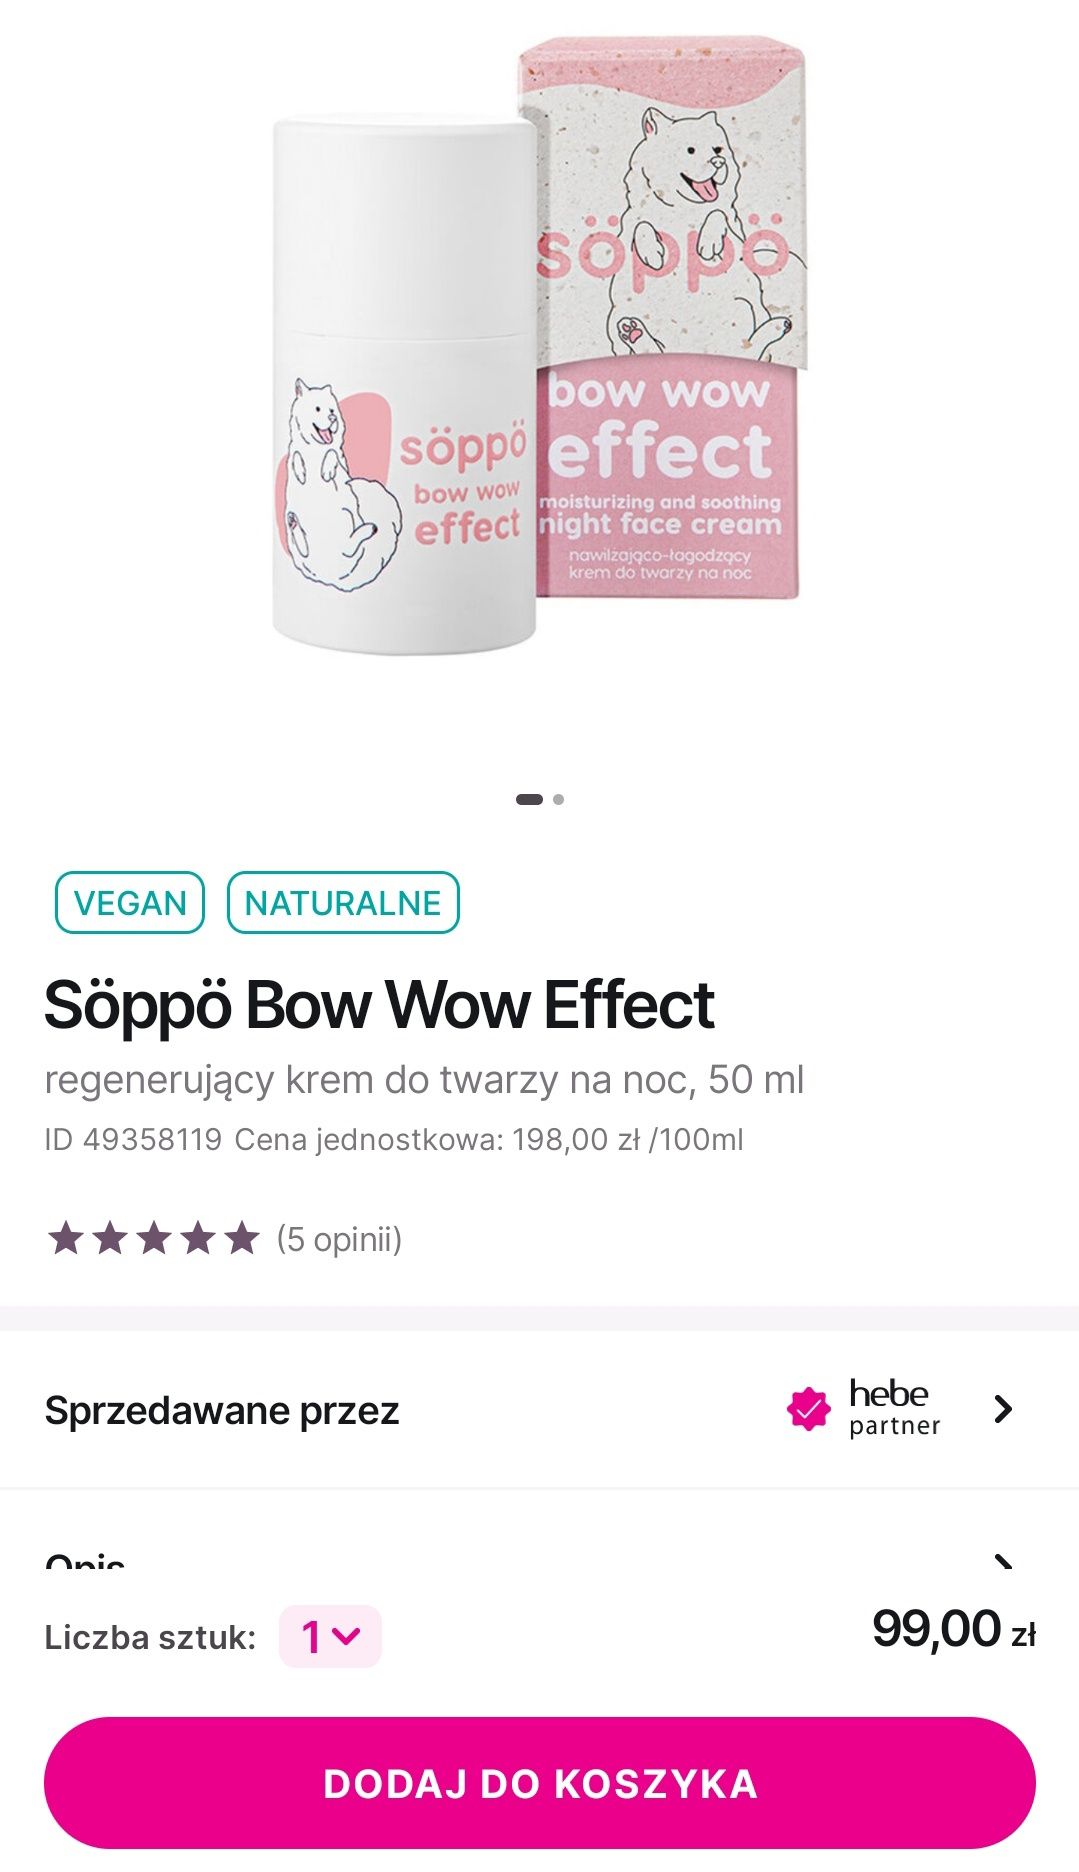 Soppo bow wow Effect krem nowy korea